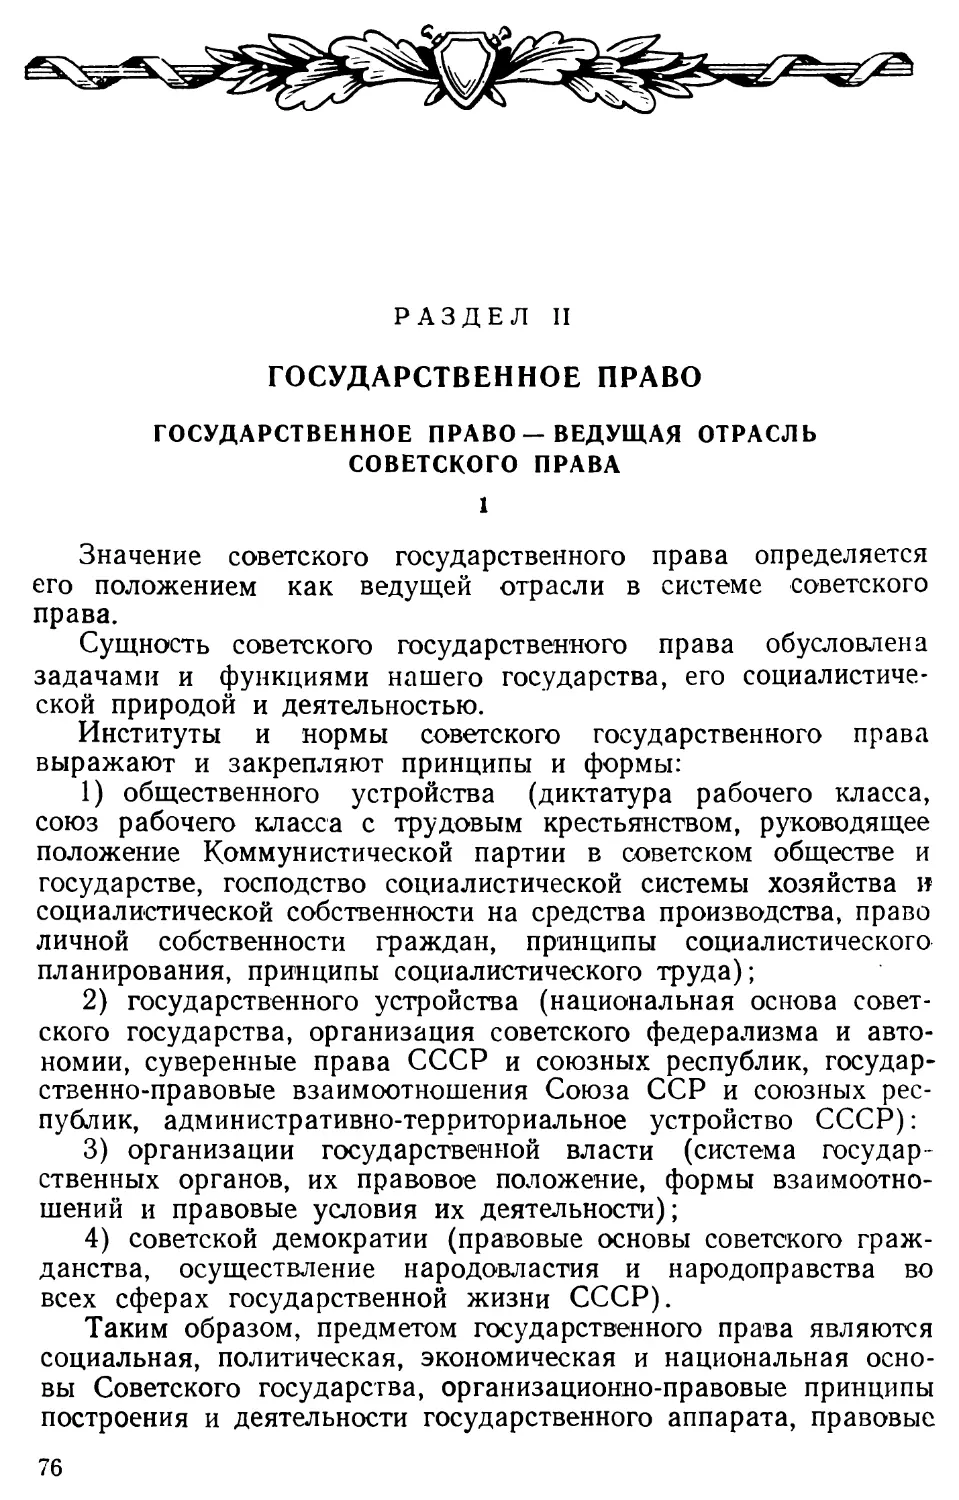 Государственное право — ведущая отрасль советского права.